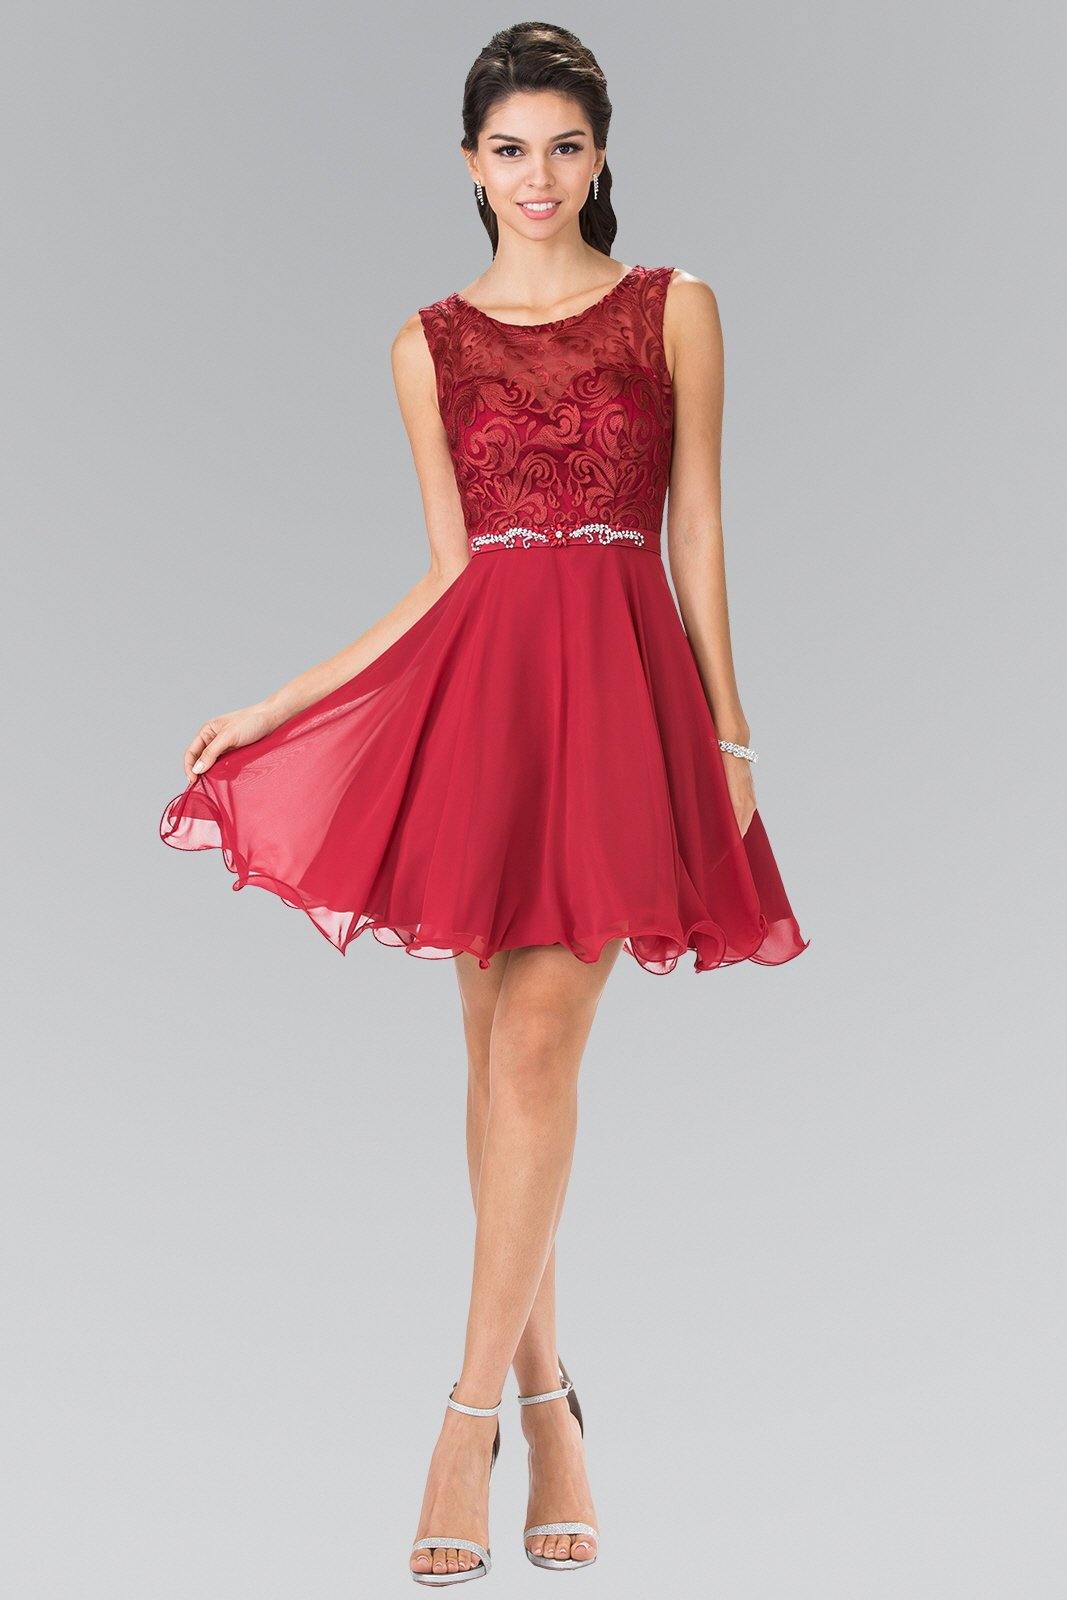 Lace Bodice A-Line Short Dress Cocktail - The Dress Outlet Elizabeth K